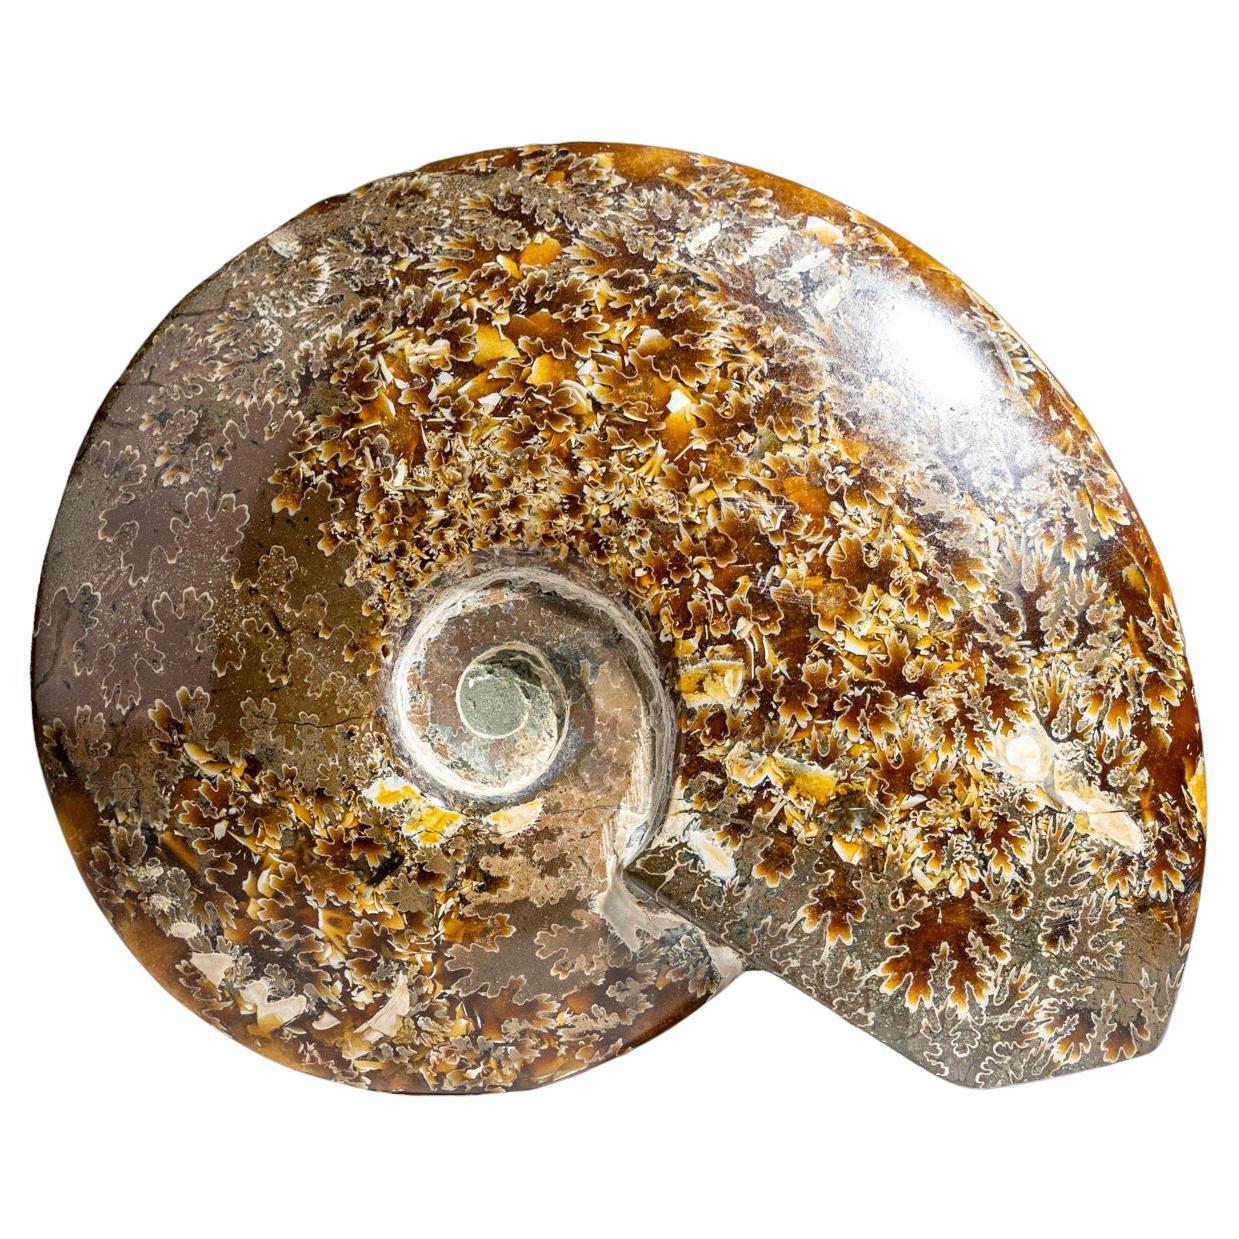 What is iridescent ammonite?